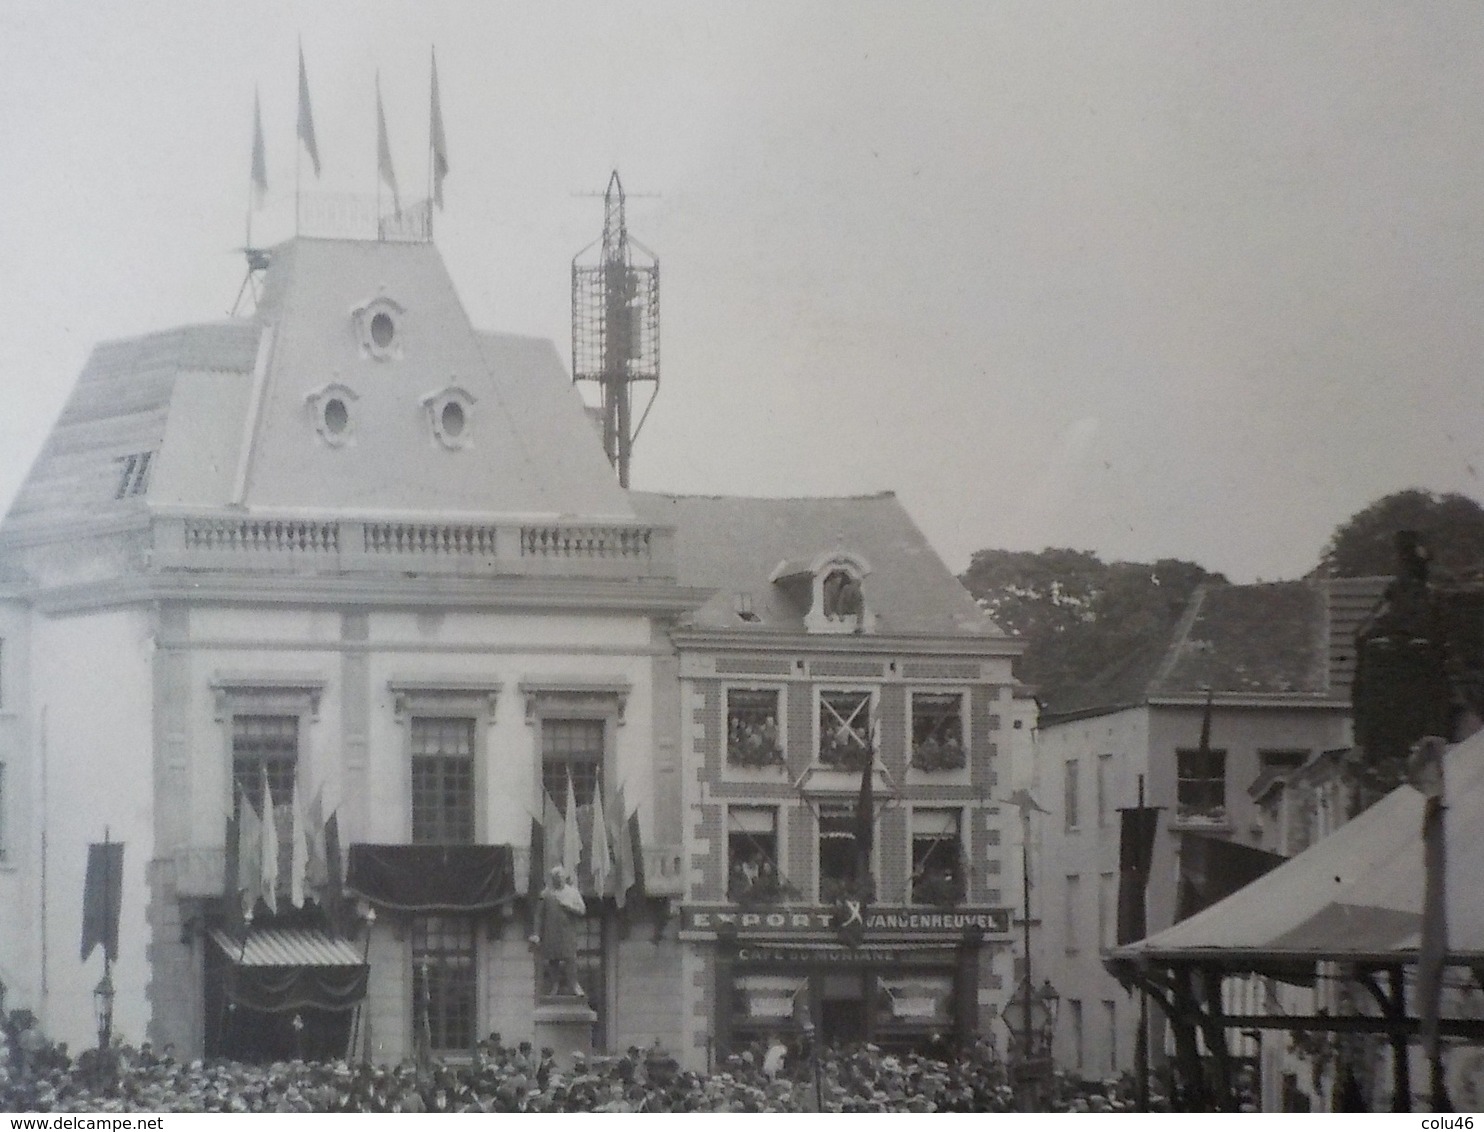 1900 photo originale Soignies Centre kiosque évènement important Roi ? Reine?  24 x 18 cm